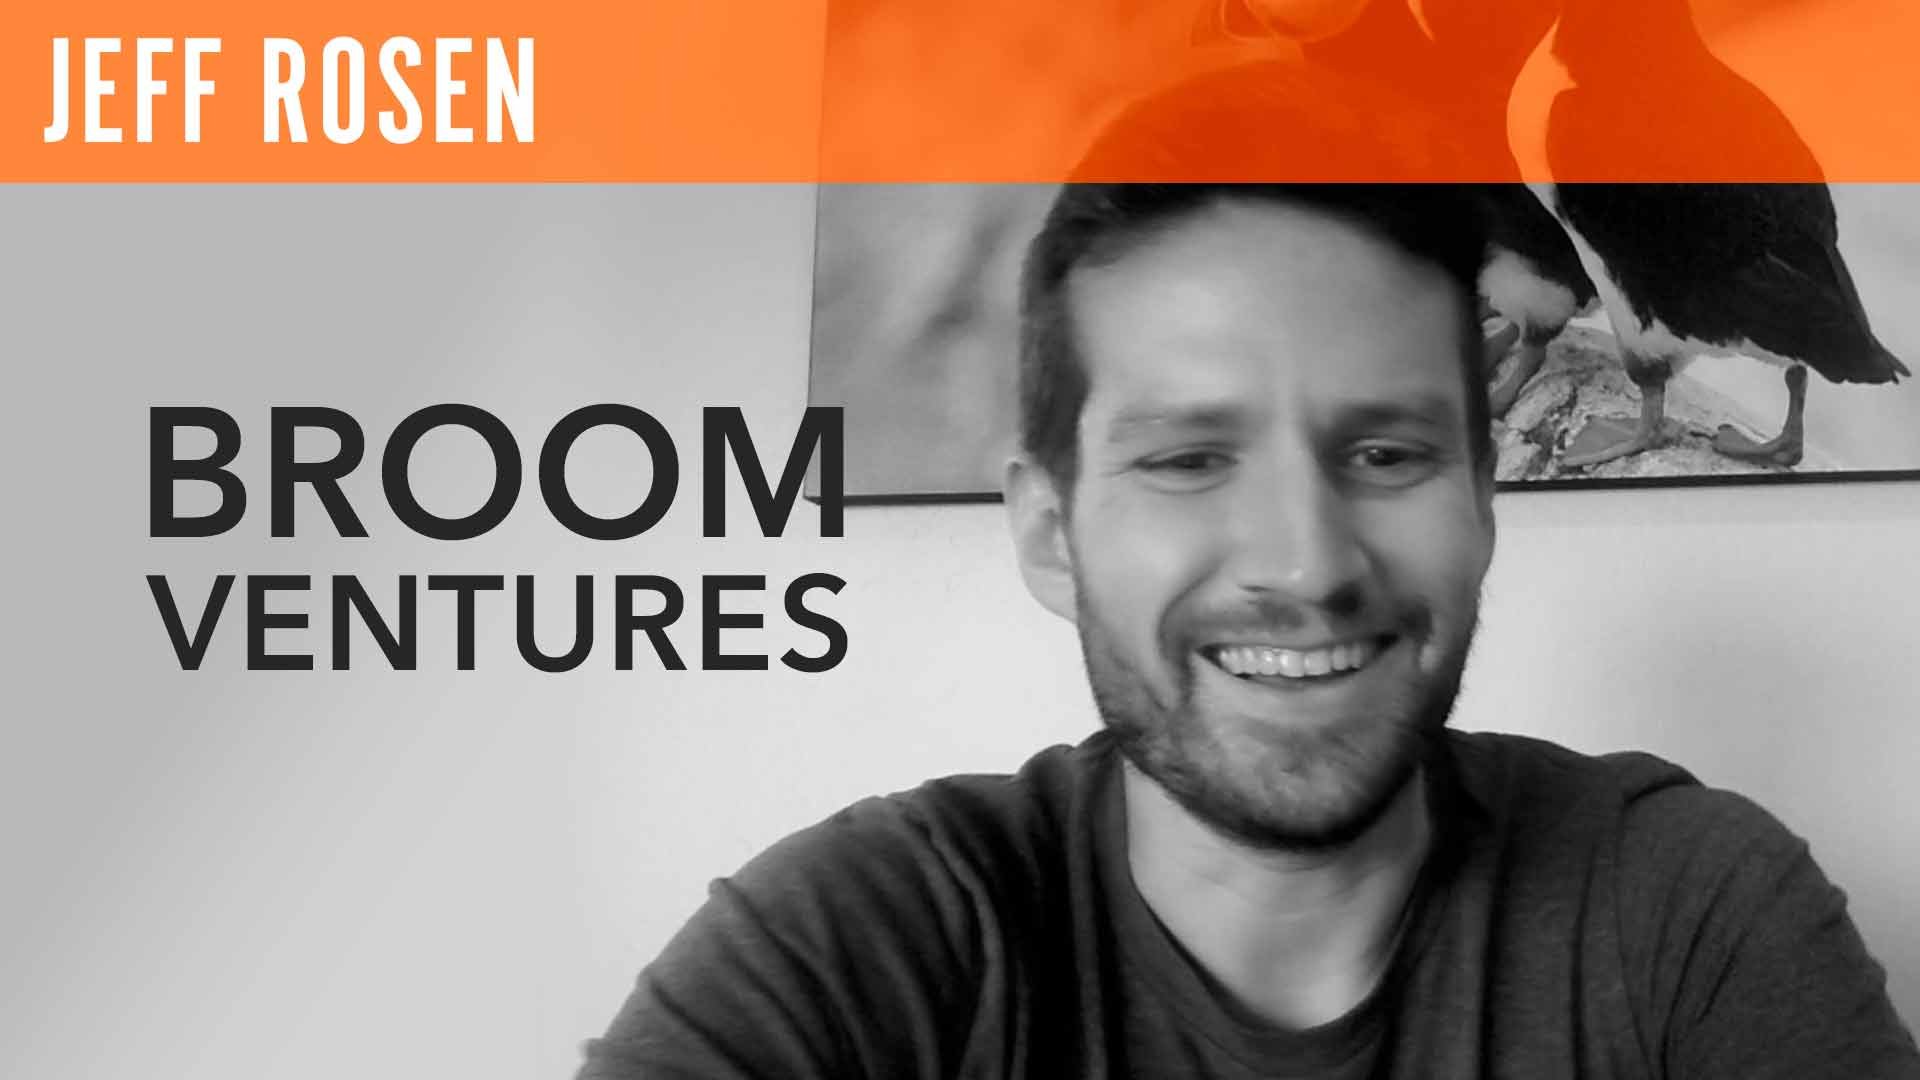 Jeff Rosen, "Broom Ventures"